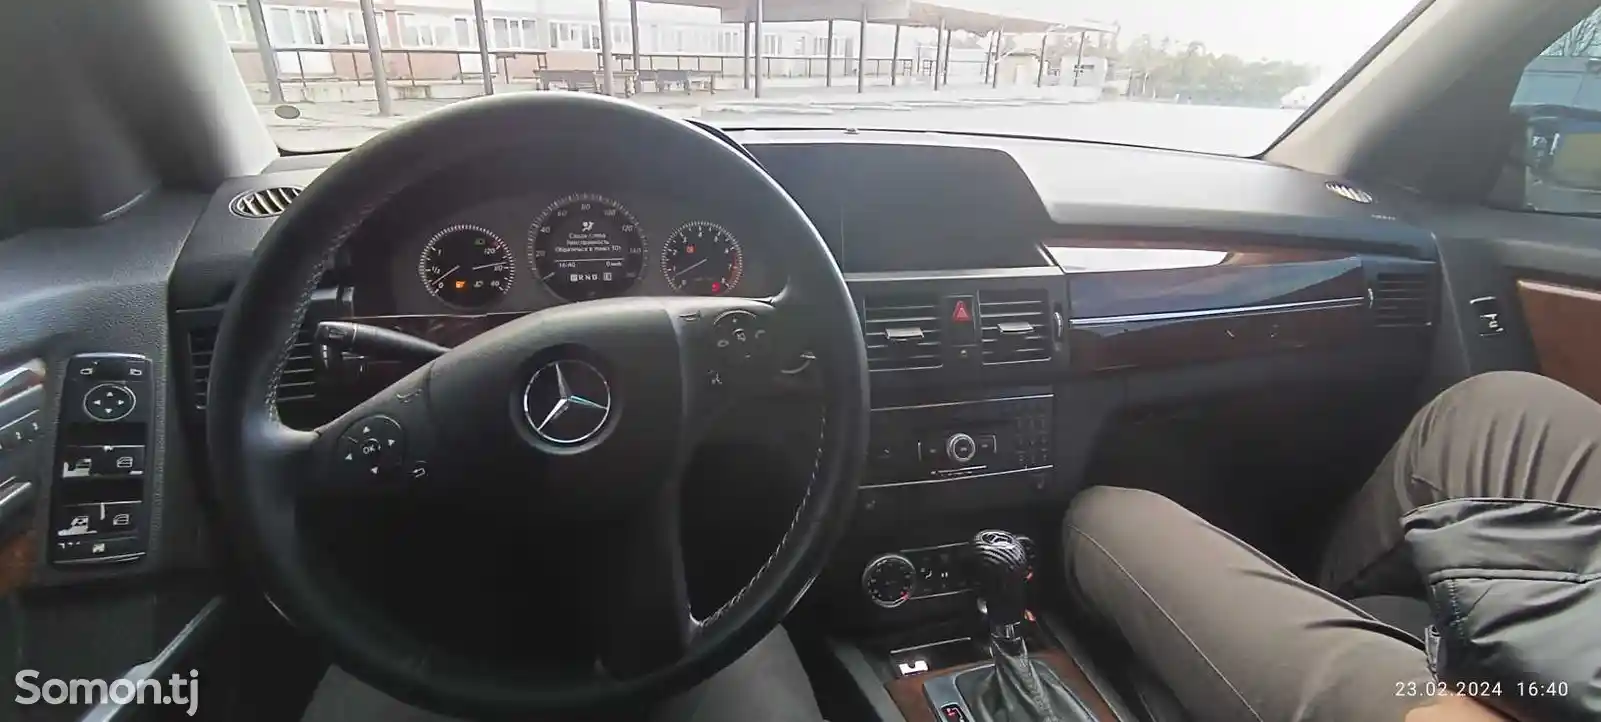 Mercedes-Benz GLK class, 2012-6